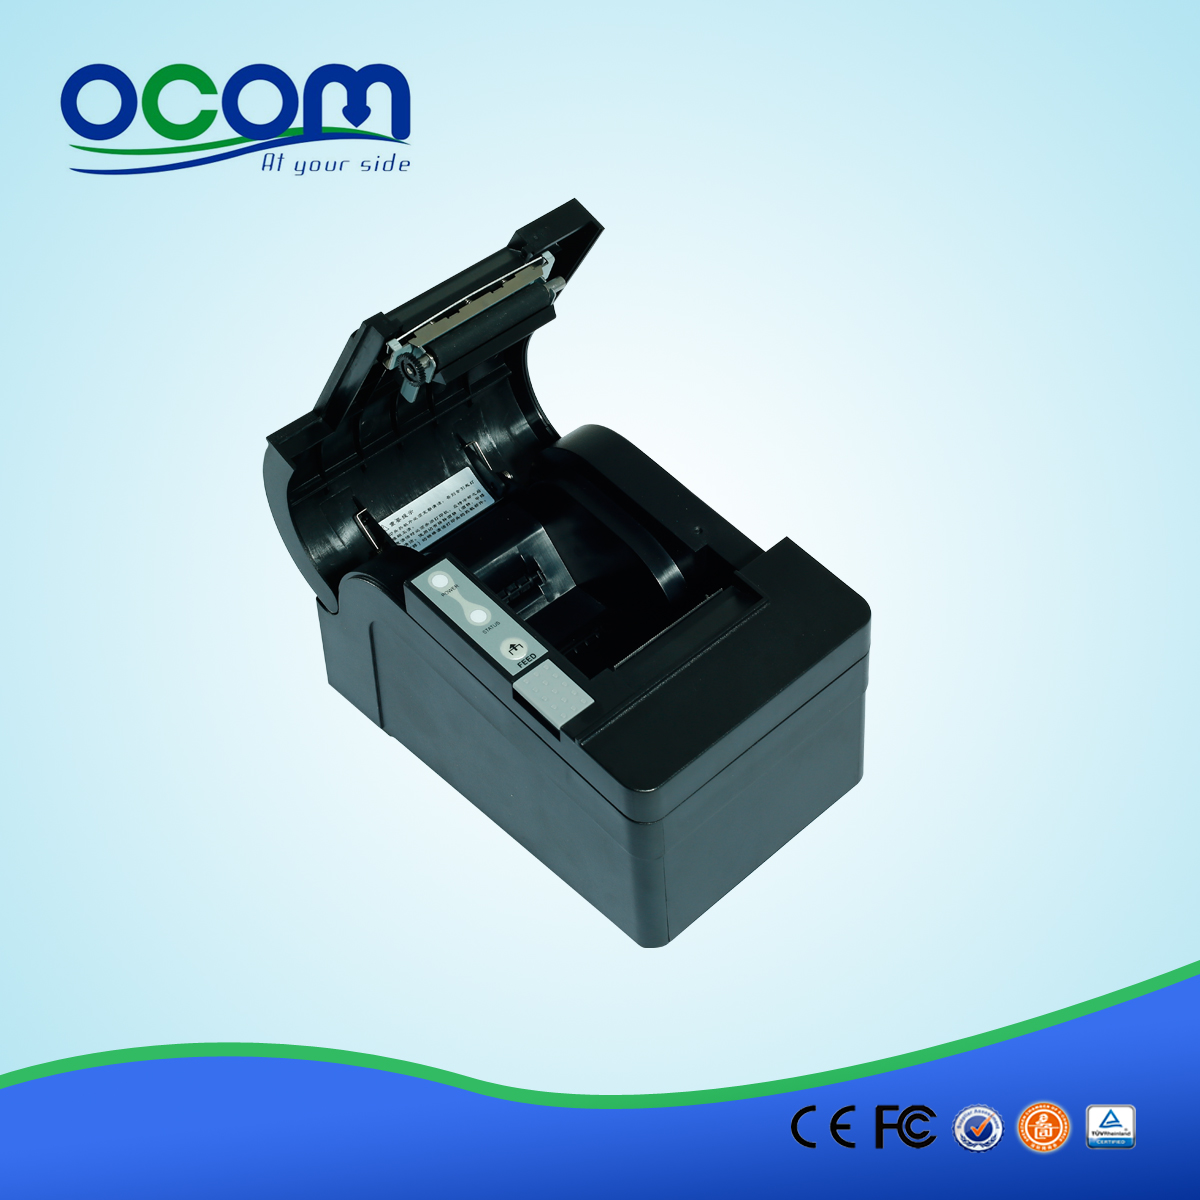 58mm андроид автообрезки Термальный чековый printer-- OCPP-58C